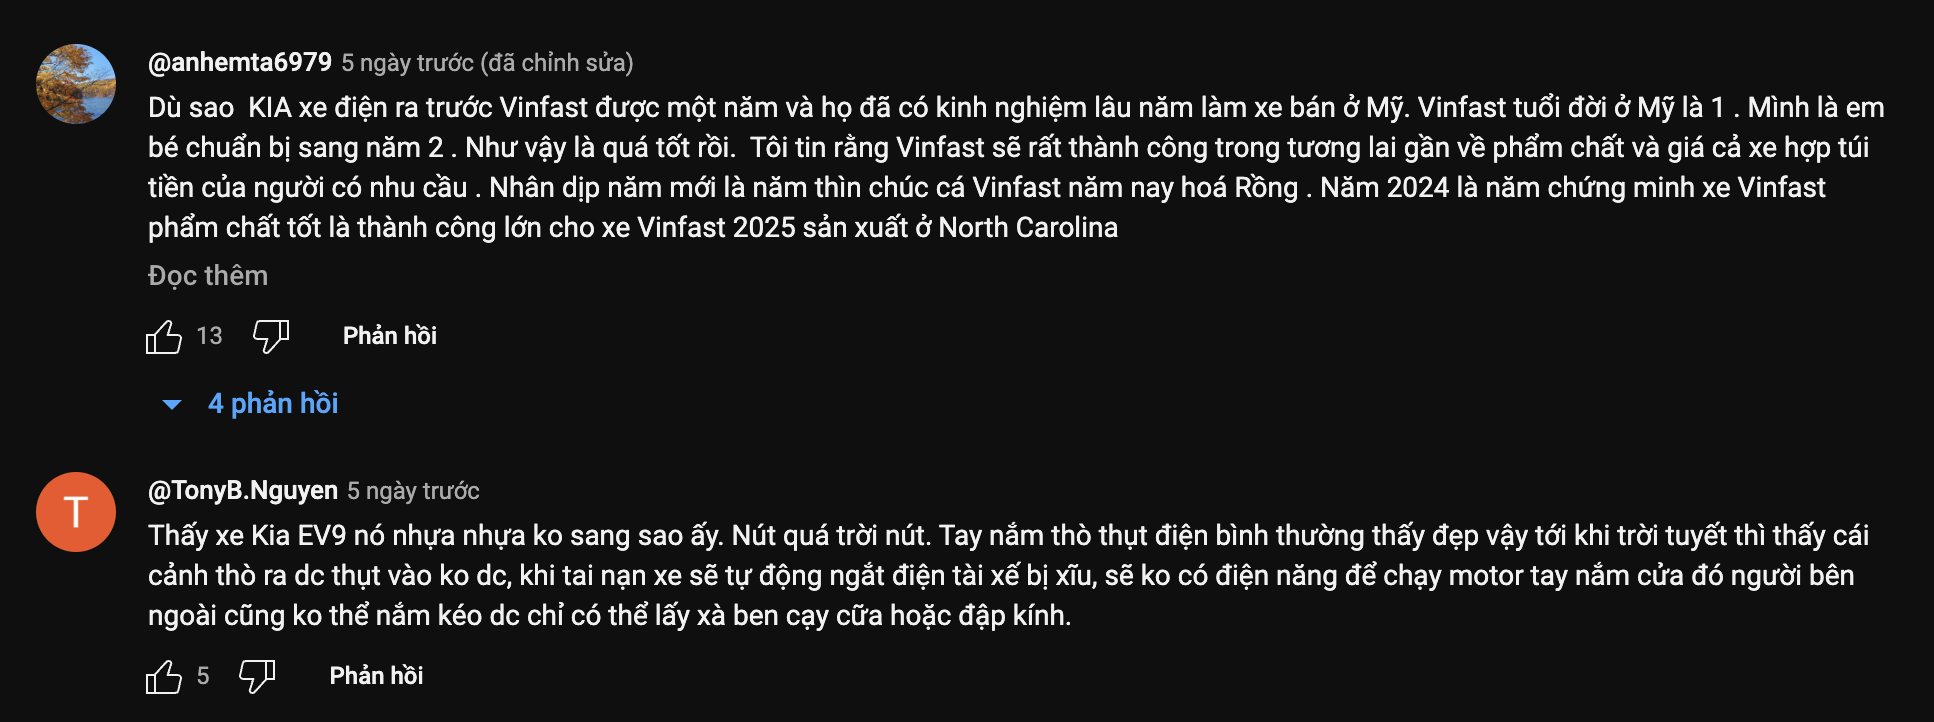 Trải nghiệm nhanh Kia EV9 tại Mỹ, YouTuber gốc Việt chia sẻ: "VinFast VF 9 khó bán được xe với giá hiện tại" - Ảnh 3.